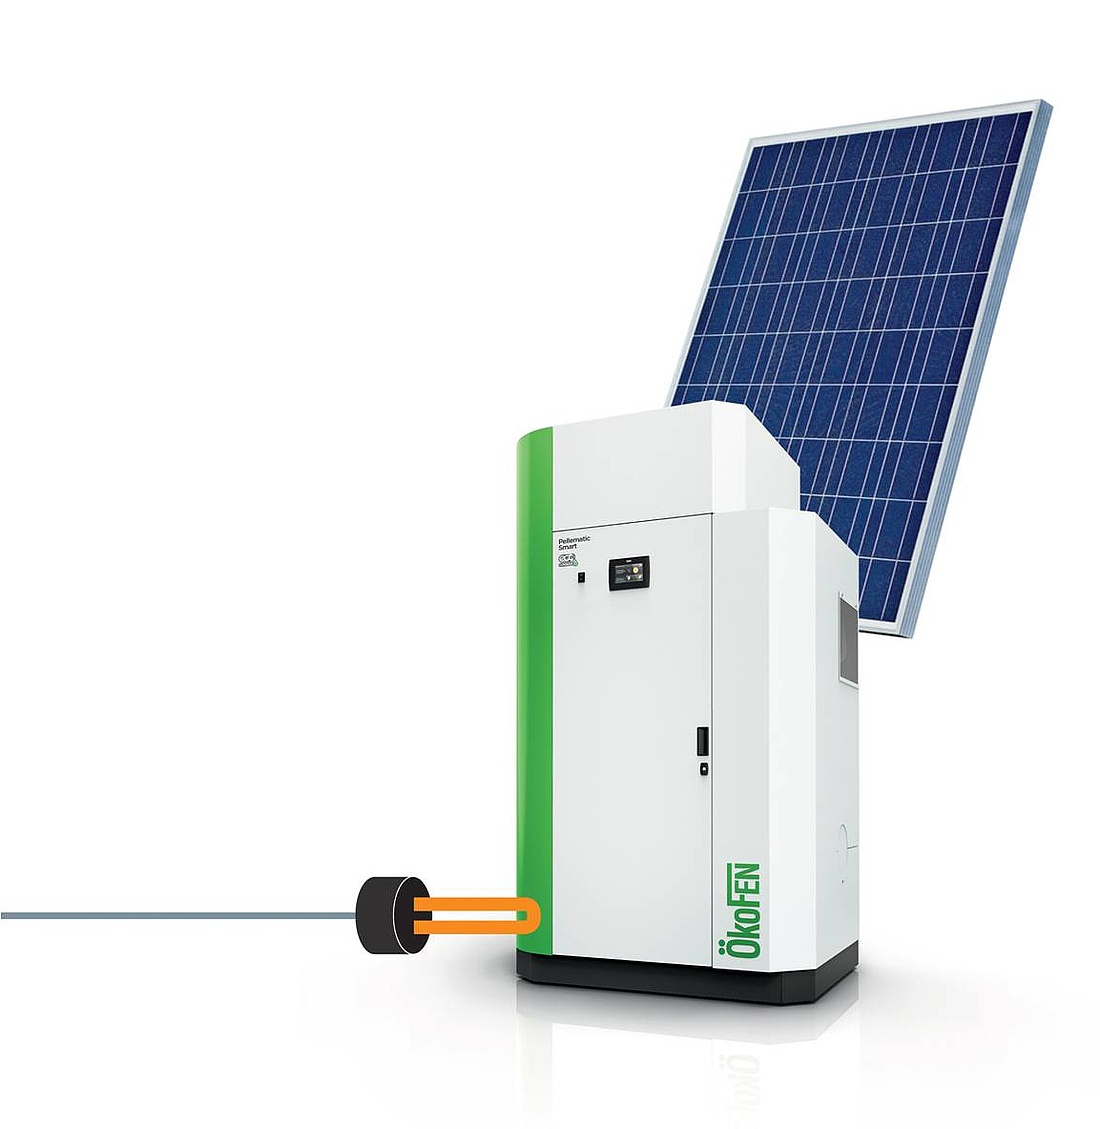 Hybride Pellet-Solarstrom-Heizung Pellematic Smart PV (Foto: ÖkoFEN, Mickhausen)